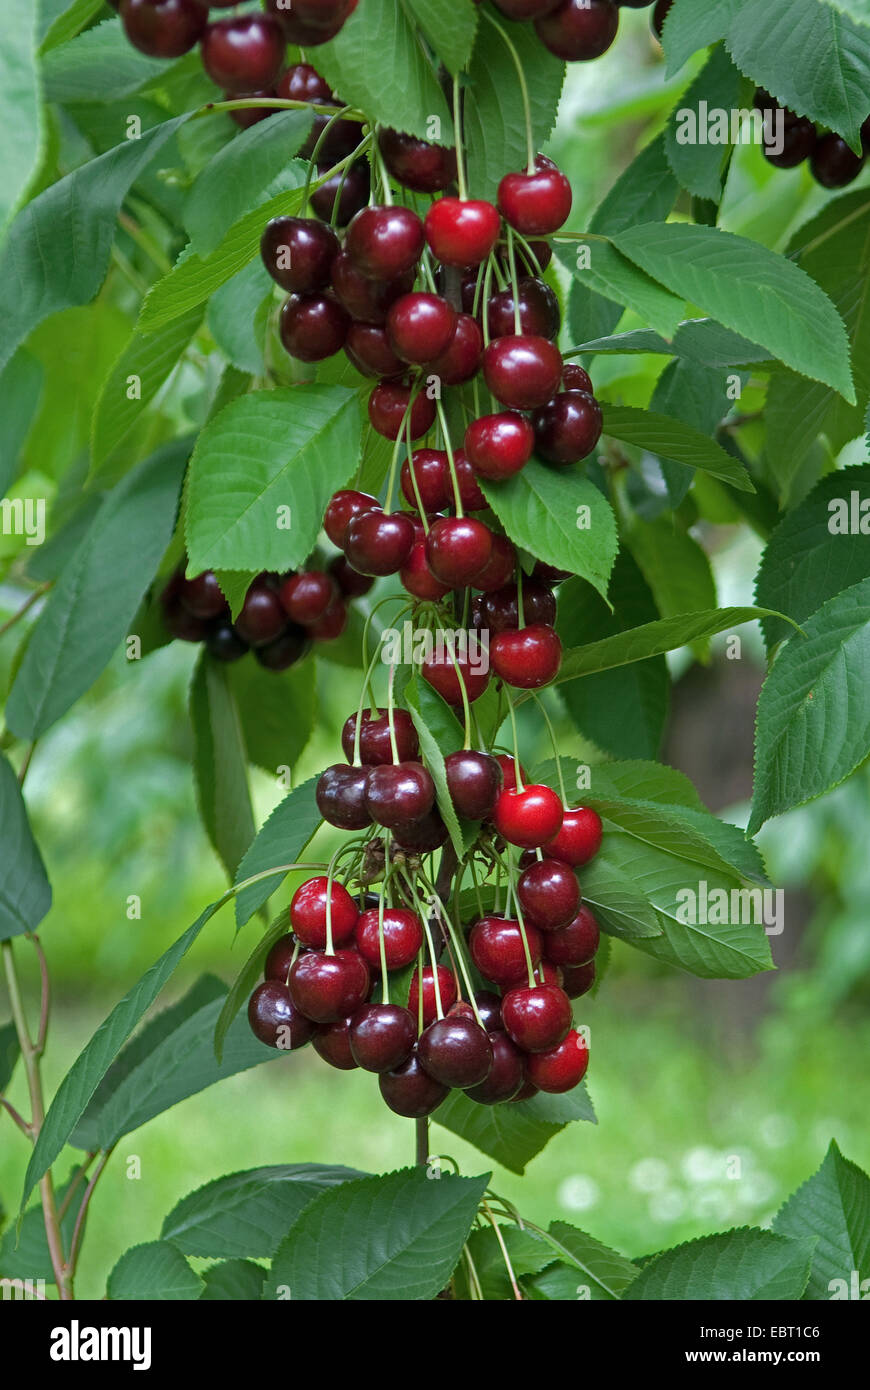 Cherry tree, Sweet cherry (Prunus avium 'Namati', Prunus avium Namati), cultivar Namati, cherries on a tree Stock Photo